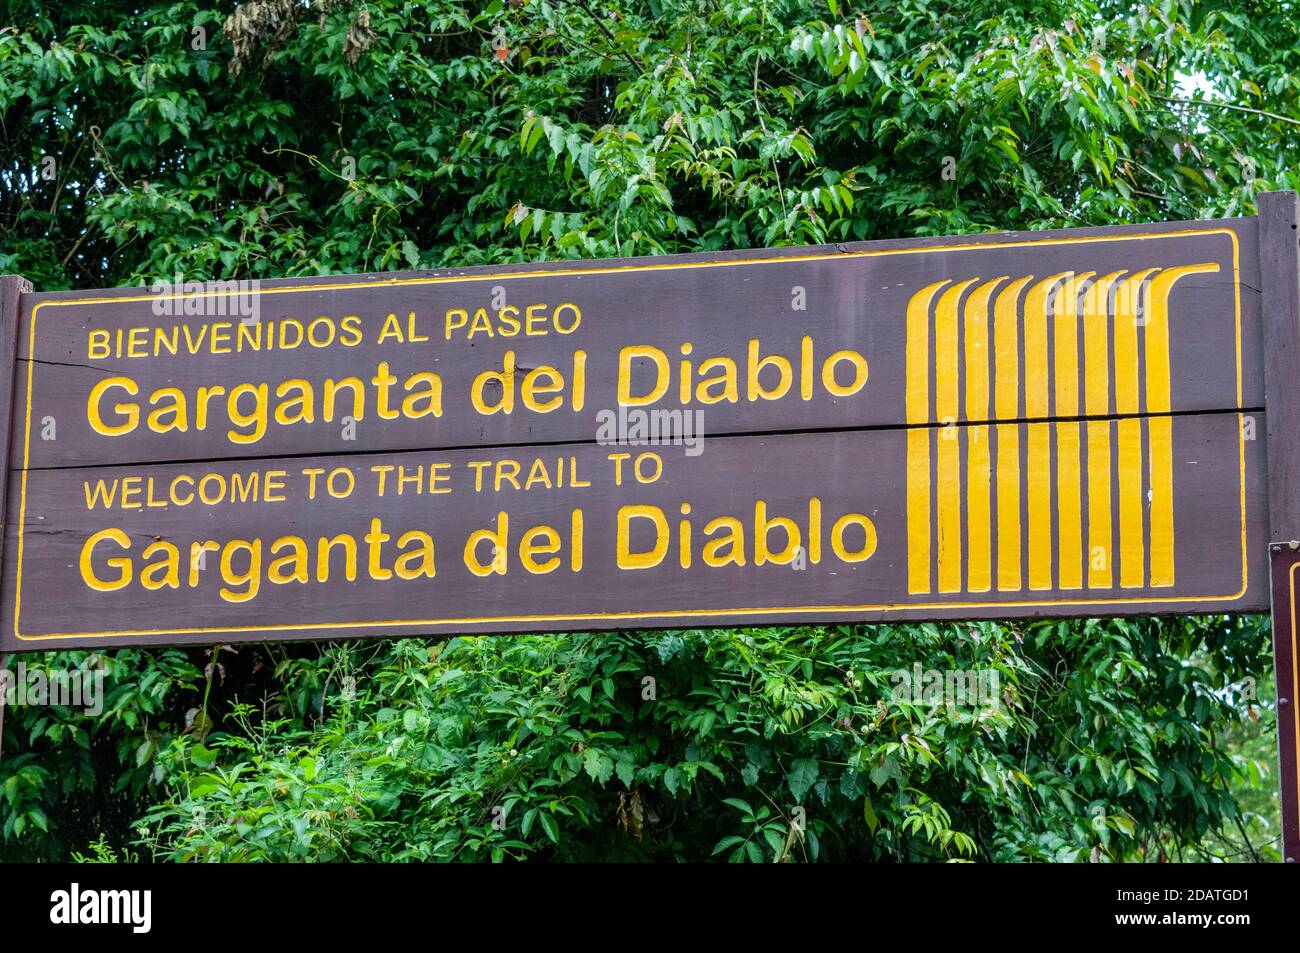 Ein Schild des Wanderweges Garganta del Diablo Der letzte Bahnhof am Ende der Strecke Für den Jungle-Zug, um den 1-Kilometer-Weg zu Fuß zu gehen Stockfoto